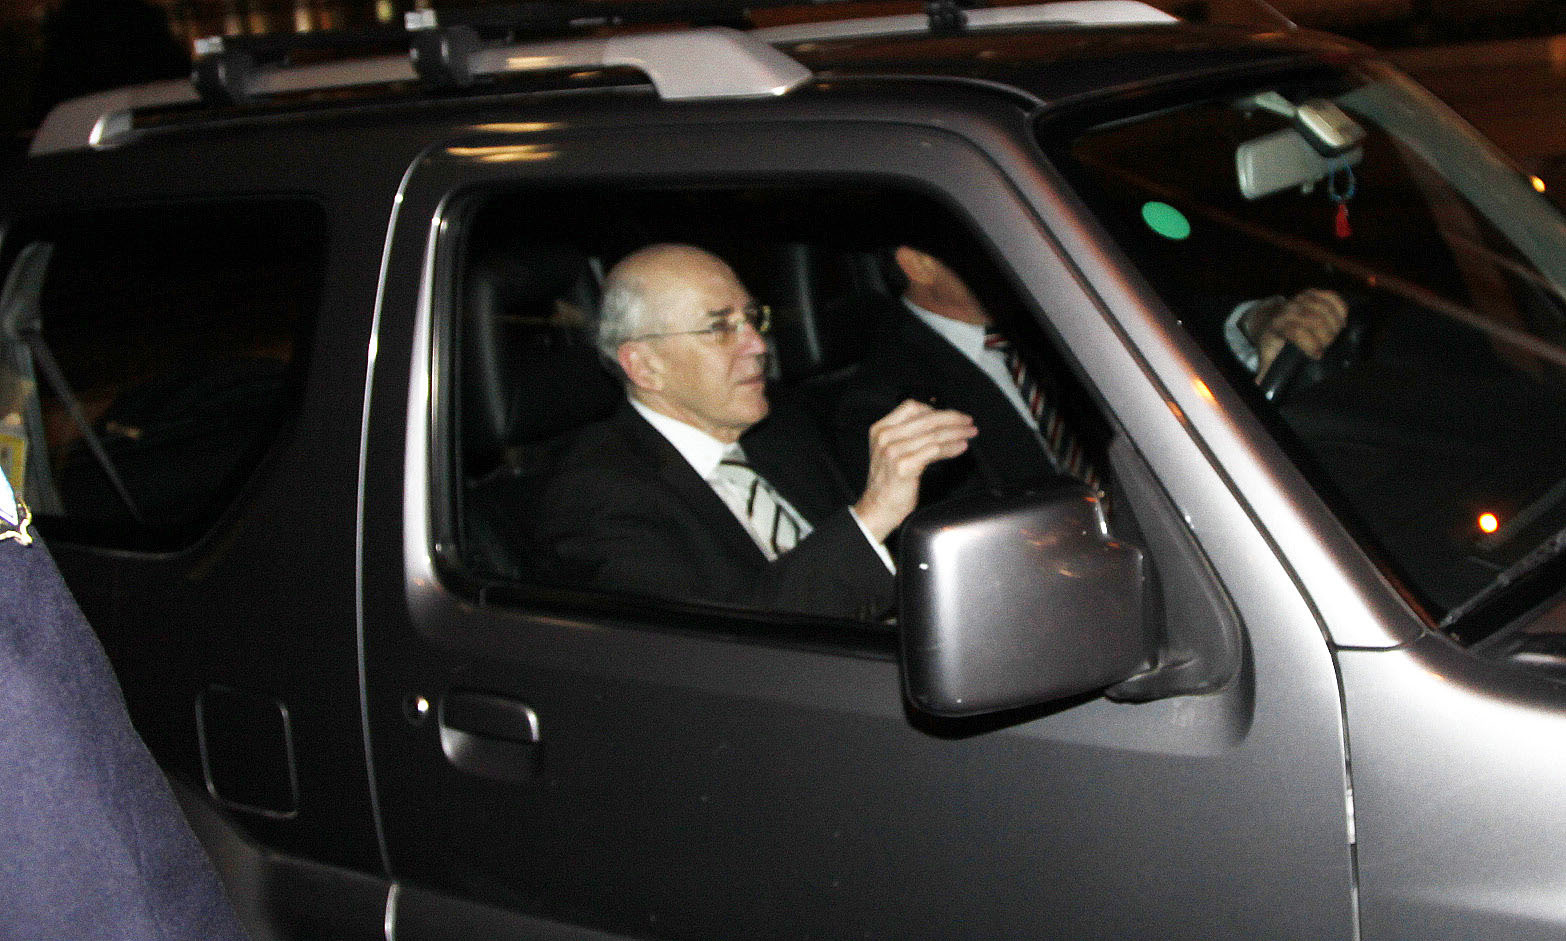 8 Νεομβρίου 2011: Ο κ.Ρουμελιώτης φθάνει στο γραφείο του τότε πρωθυπουργού Γ.Παπανδρέου που αναζητεί μεταβατικό πρωθυπουργό